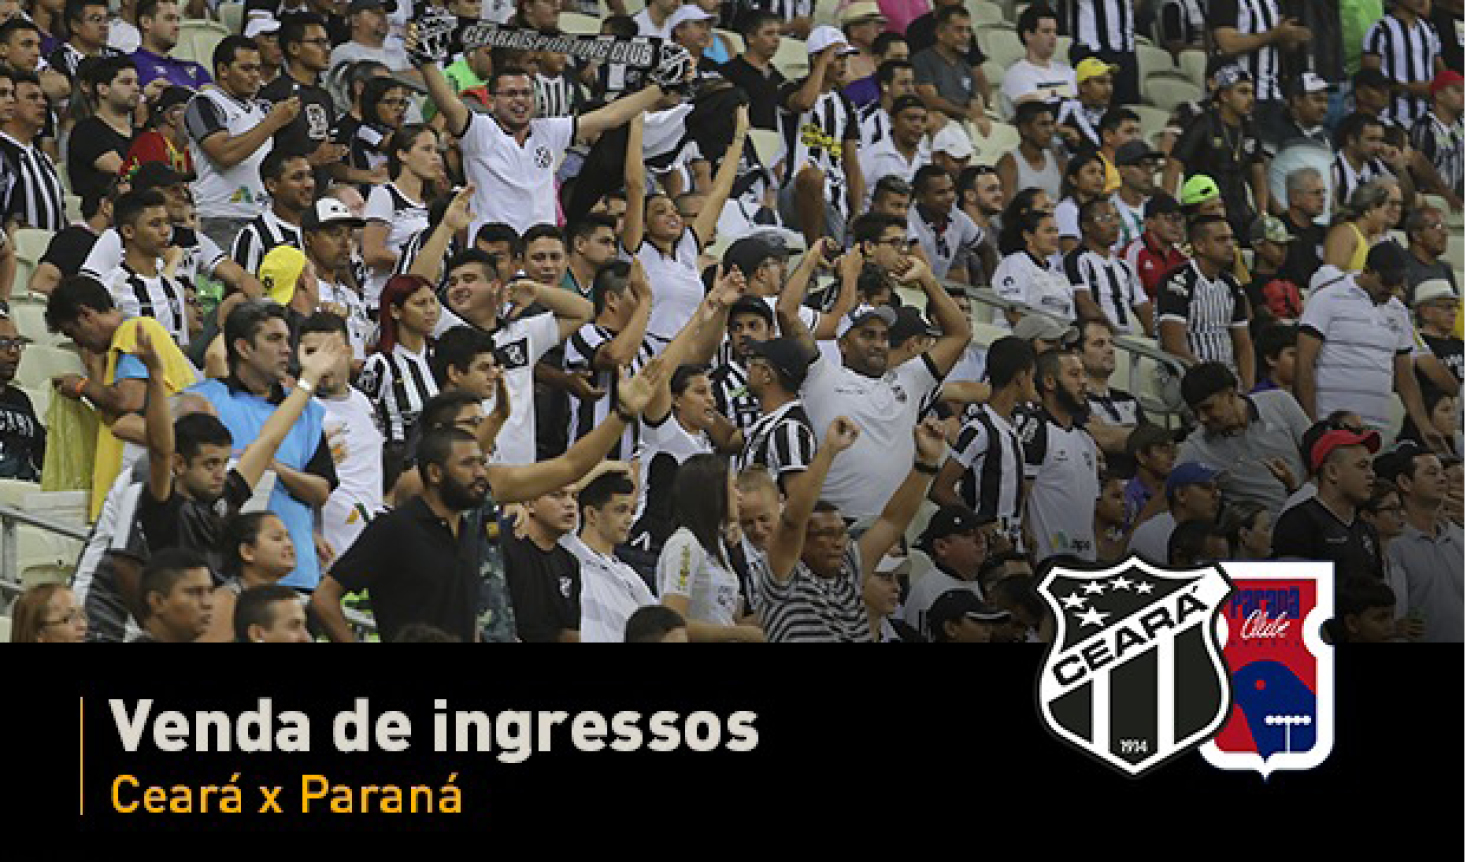 Jogo entre Ceará x Paraná terá ingressos a partir de R$ 20